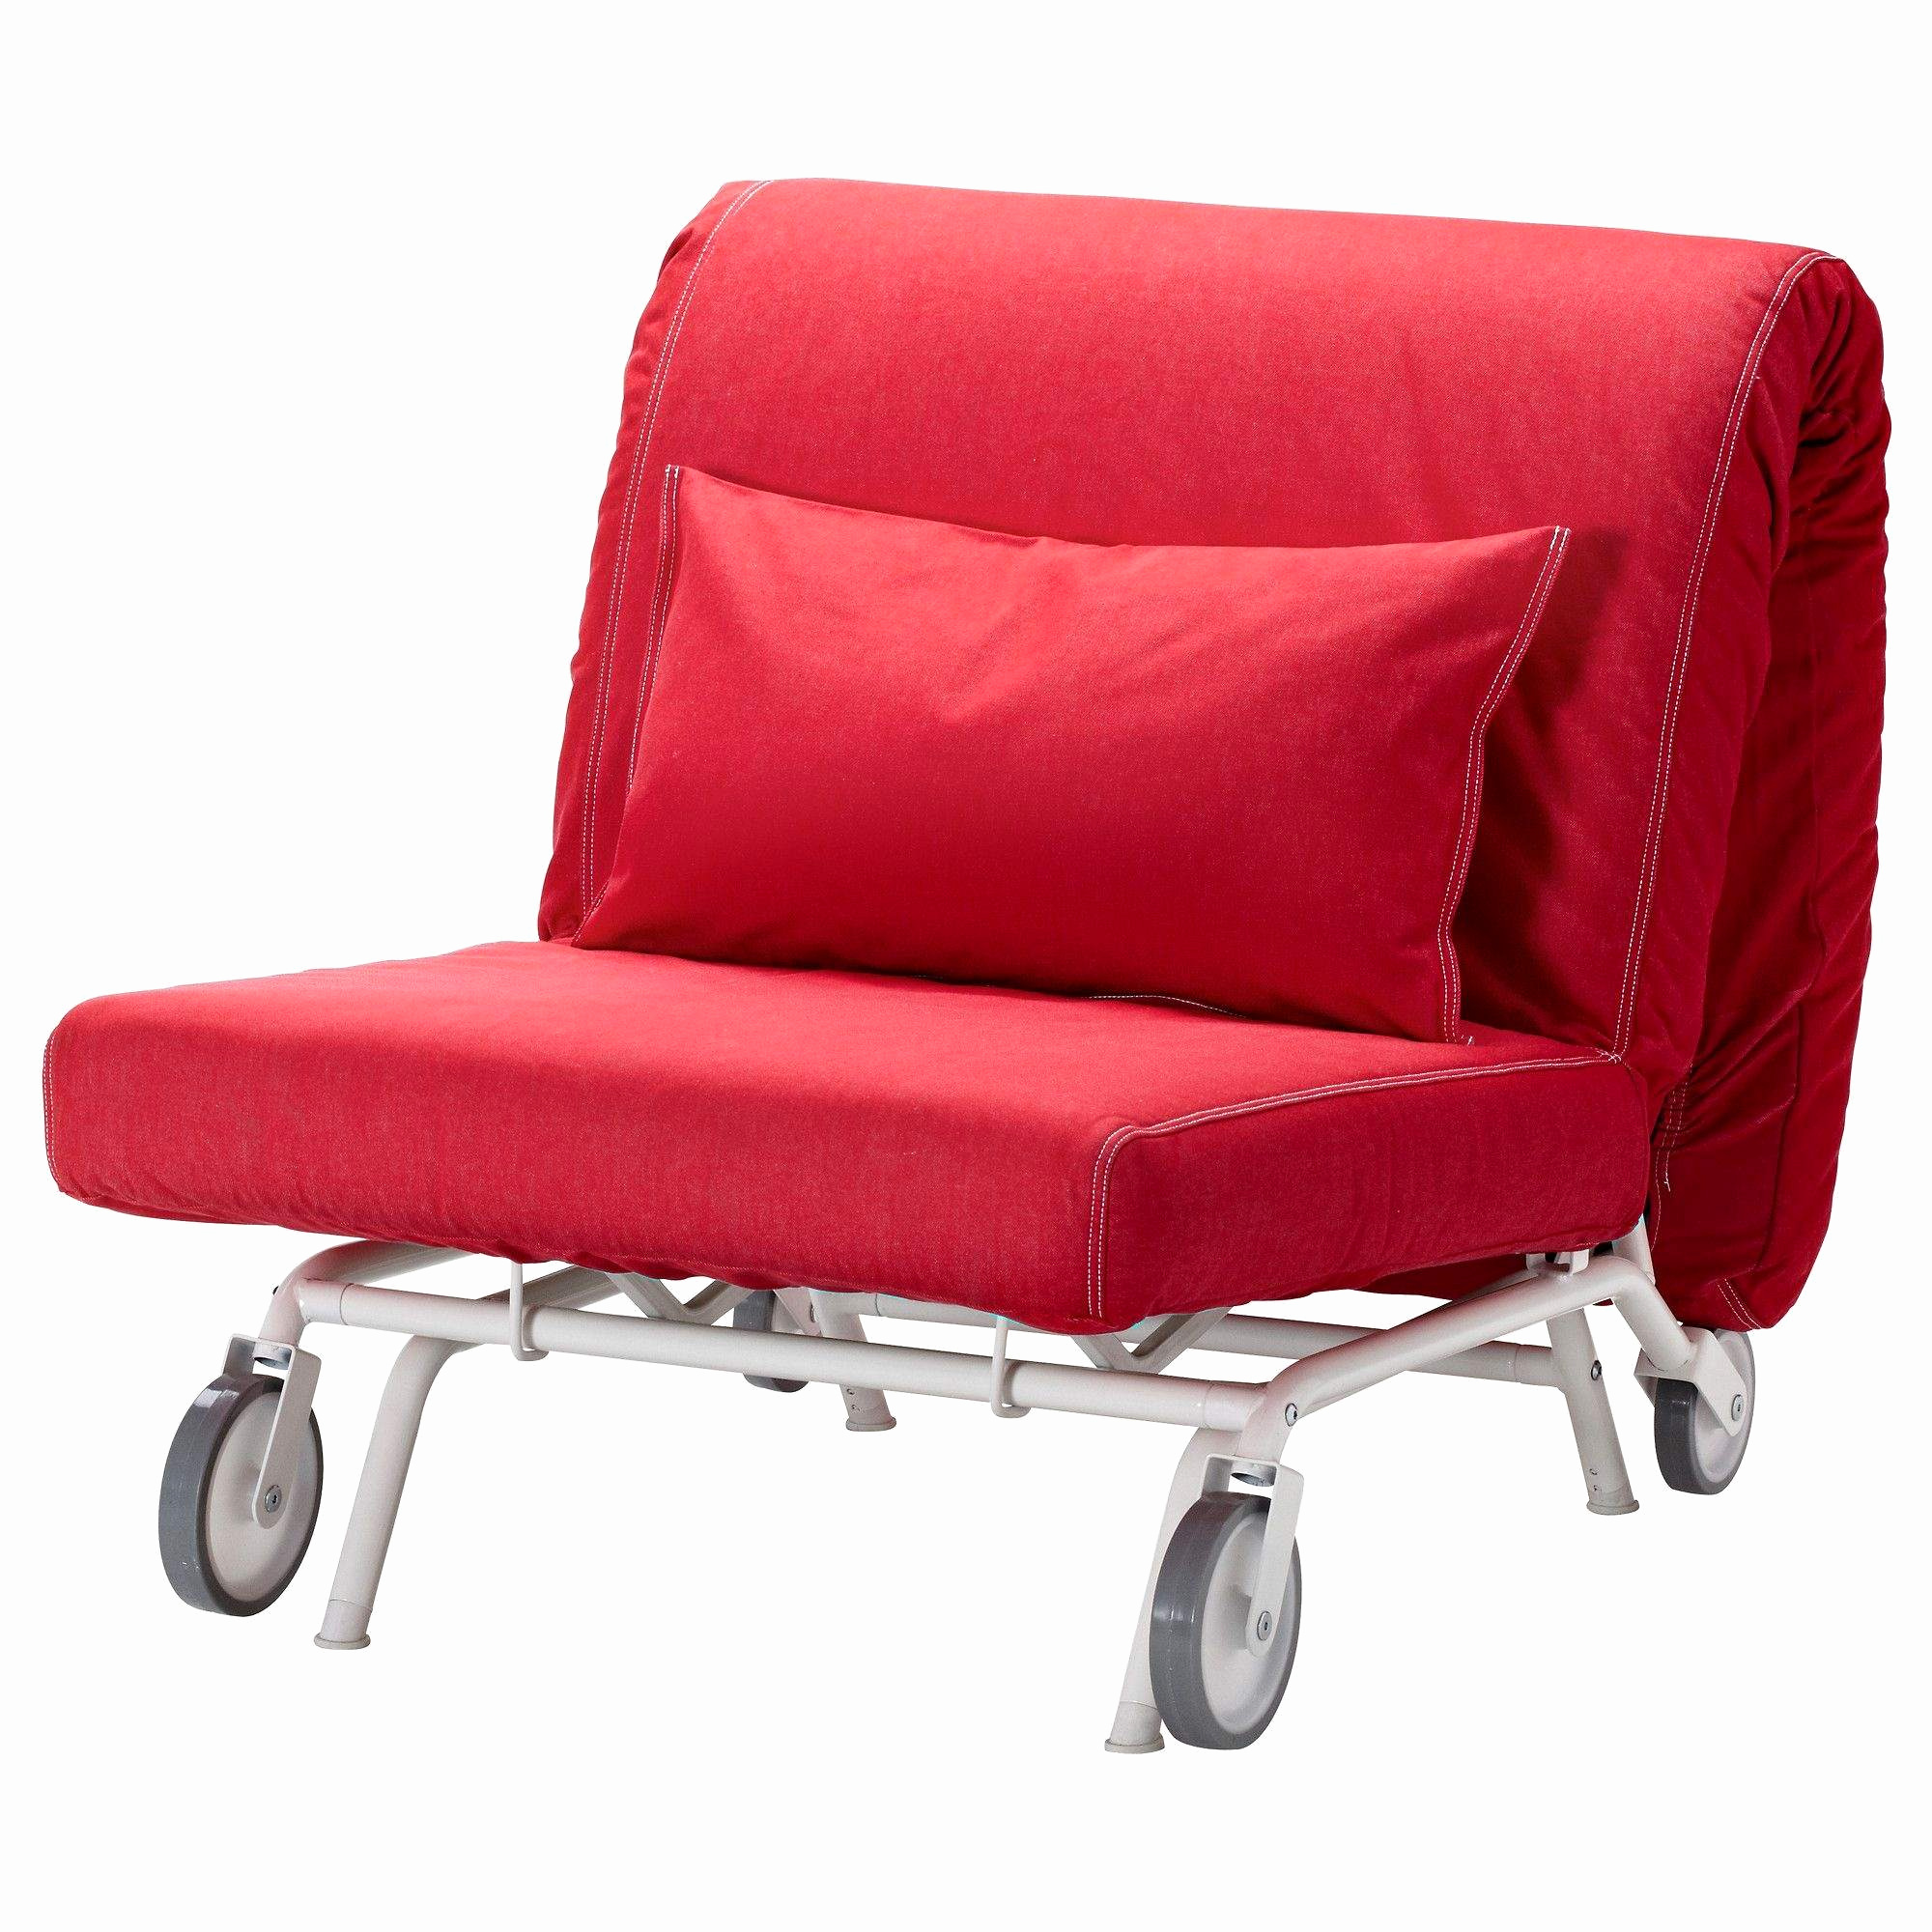 lit futon ikea luxe chaise ikea bureau chaise ikea cuisine cuisine fauteuil salon 0d of lit futon ikea